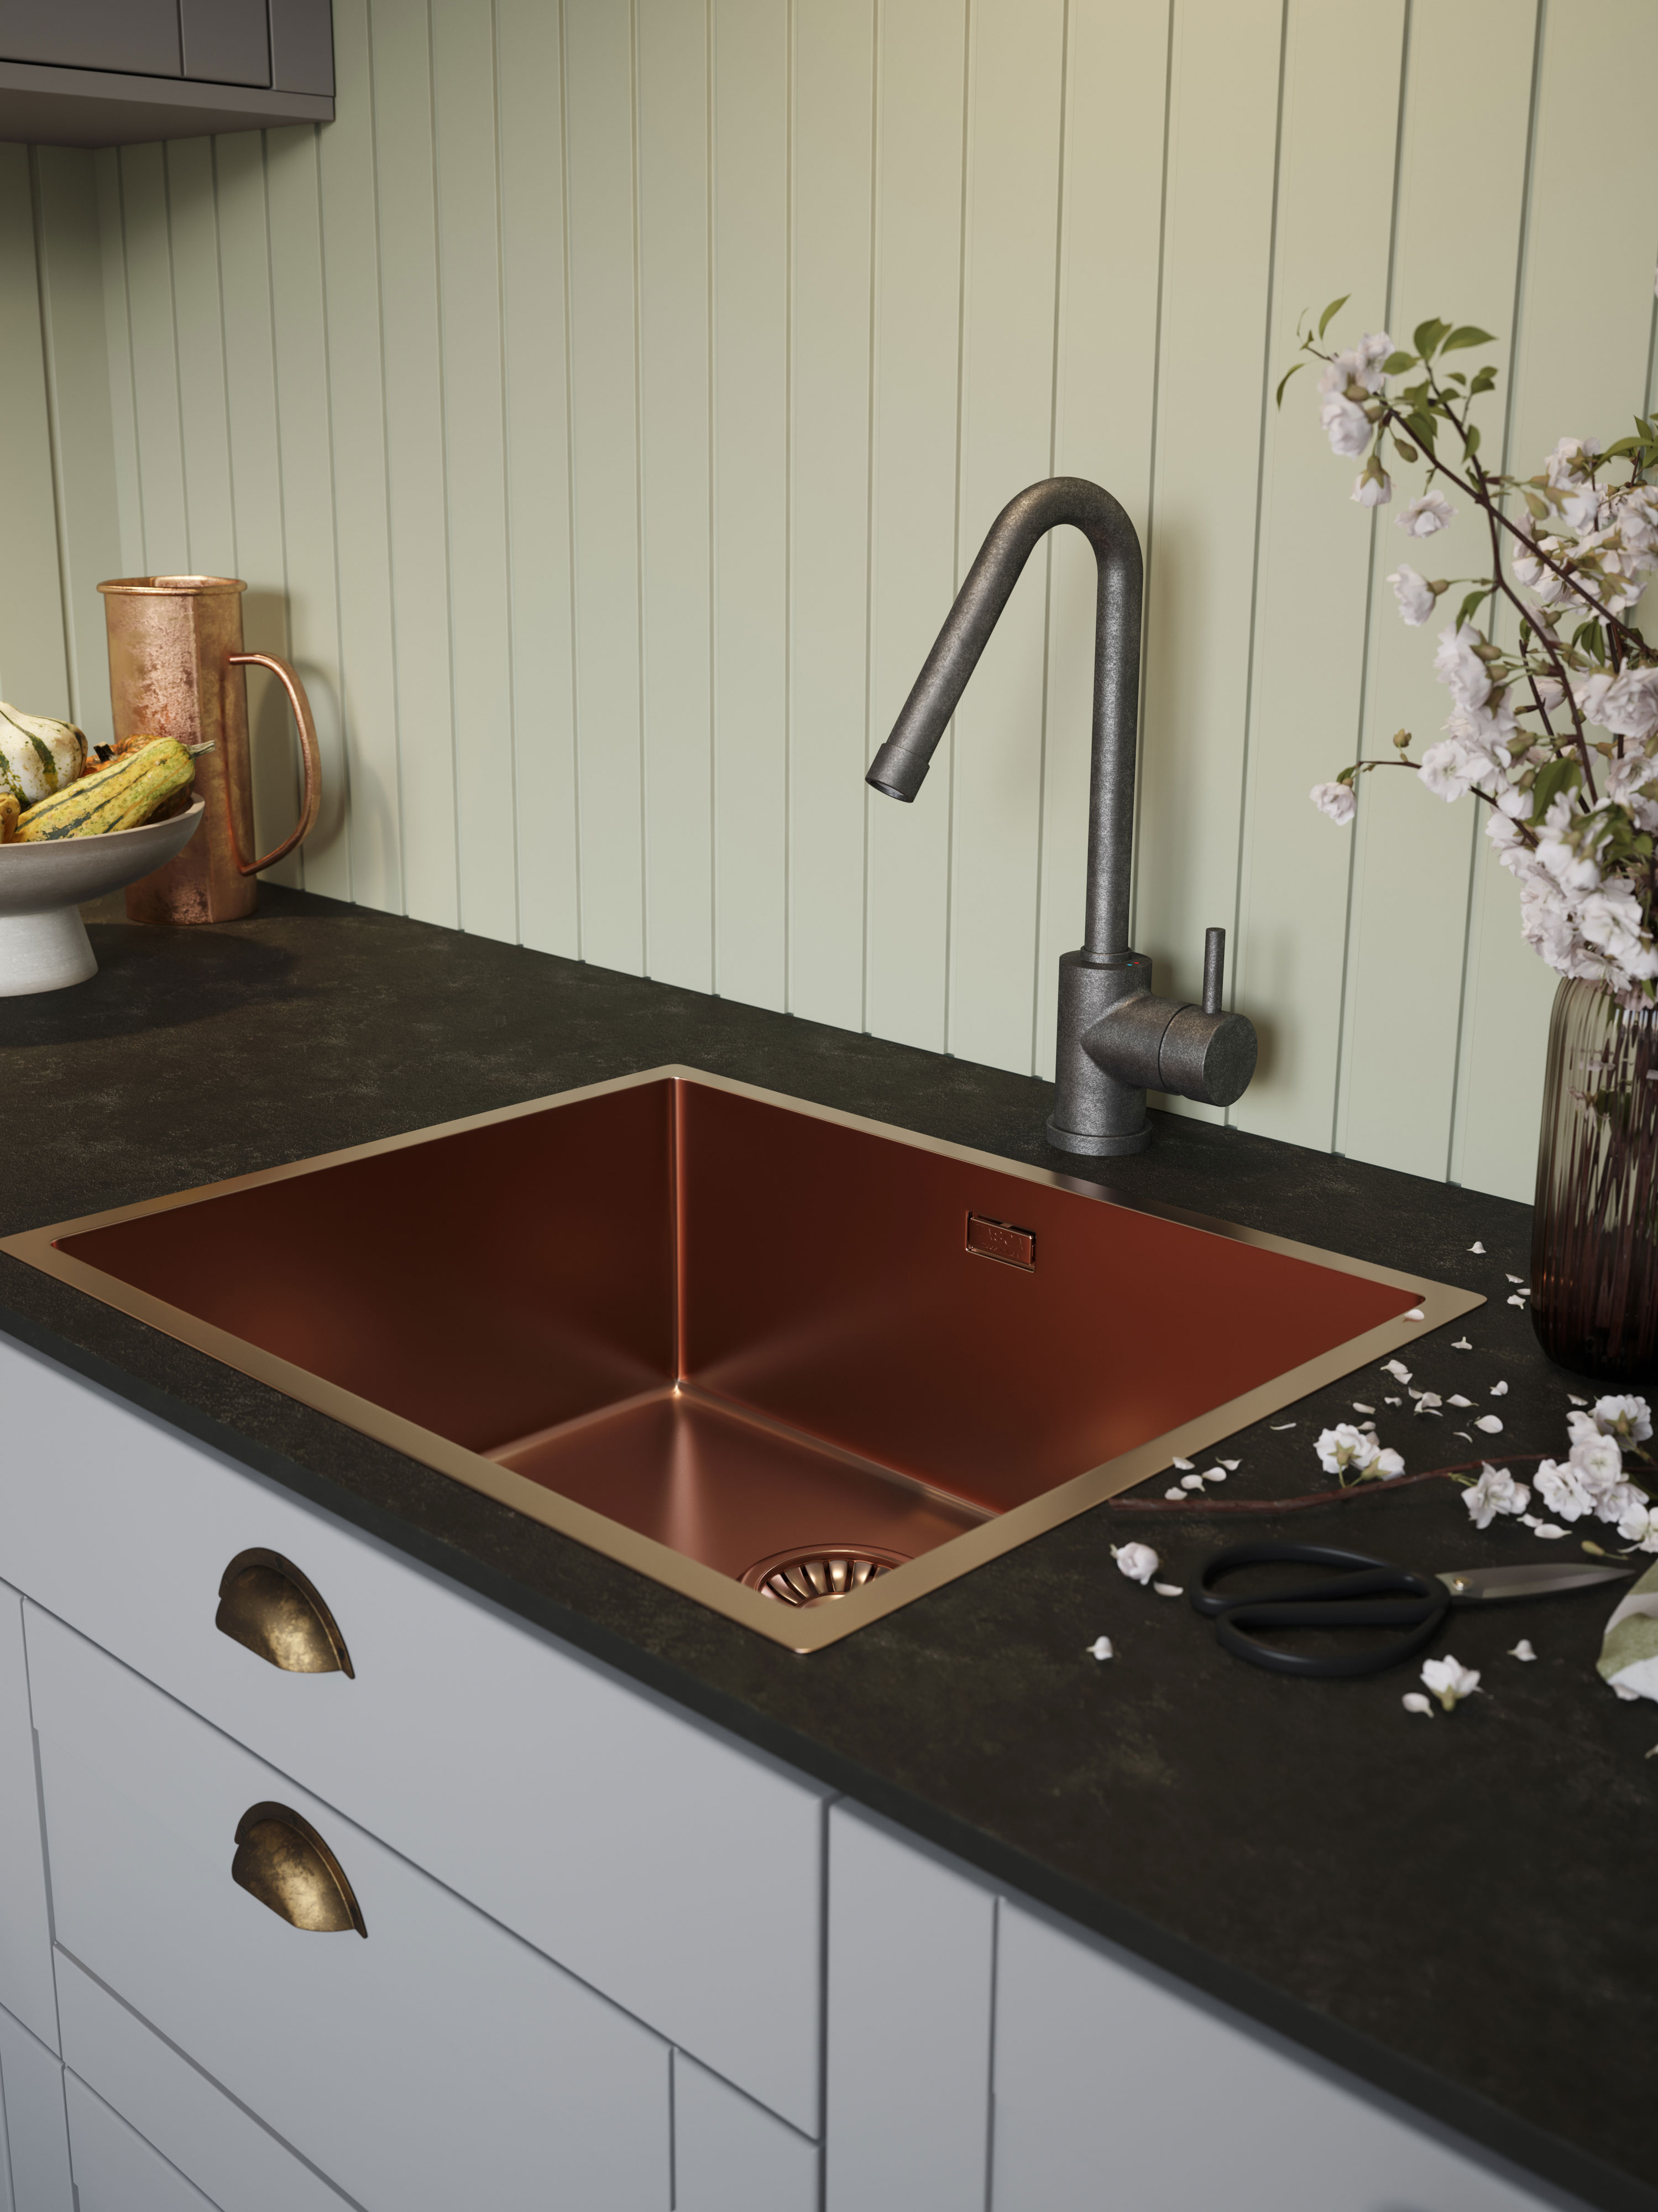 EPOQ - Perfect kitchen - Light grey Epoq Kitchen with dark worktop and flowers